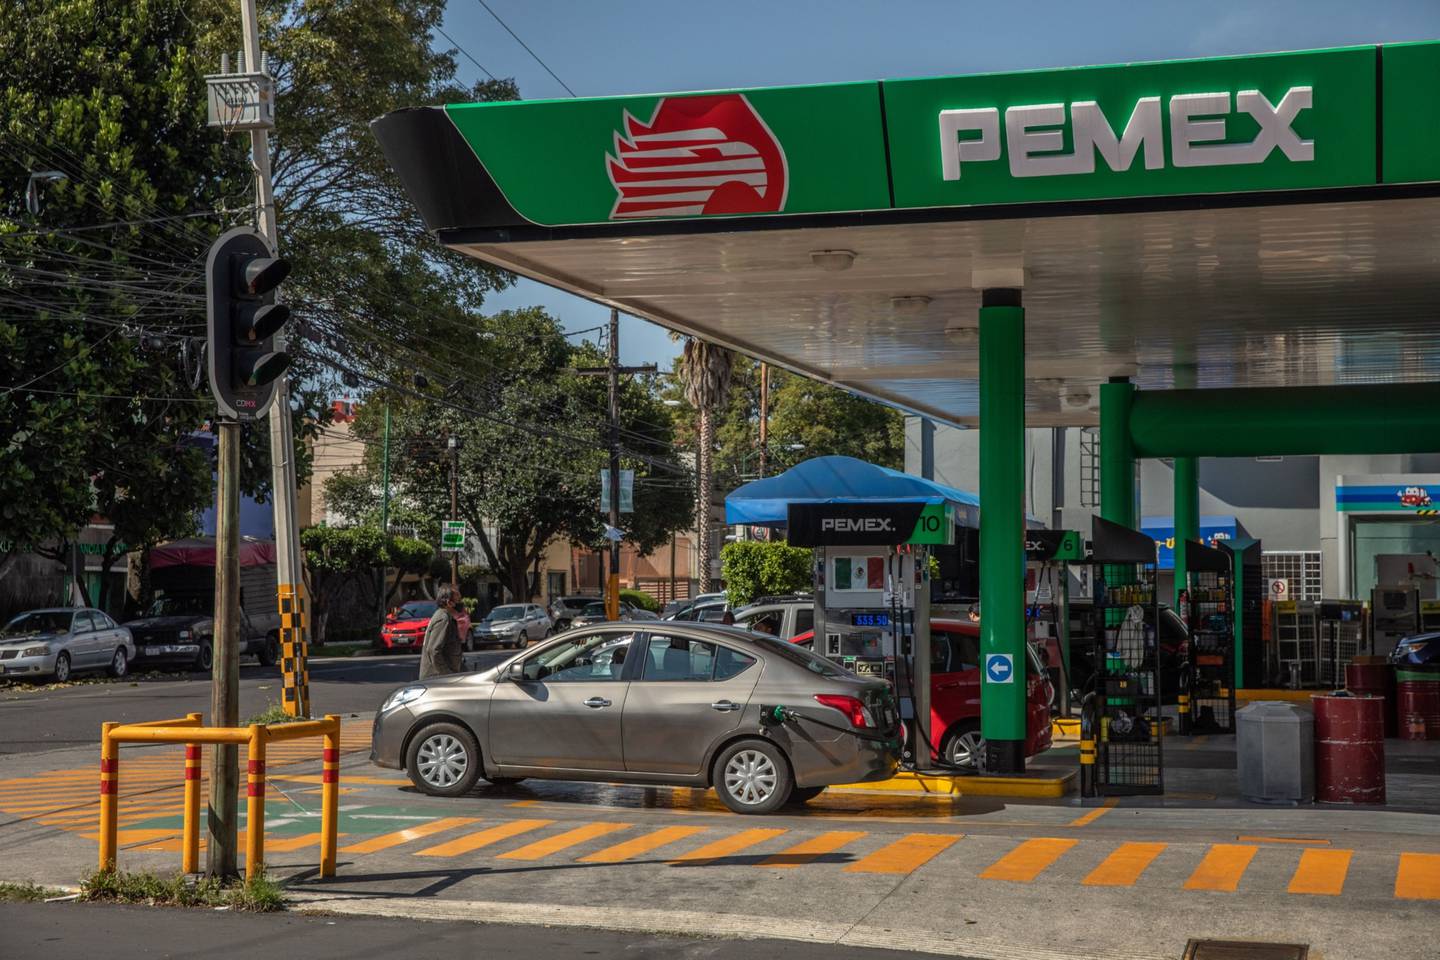 Mexico's fuel subsidies surpassed the oil revenue surplus in 2022.